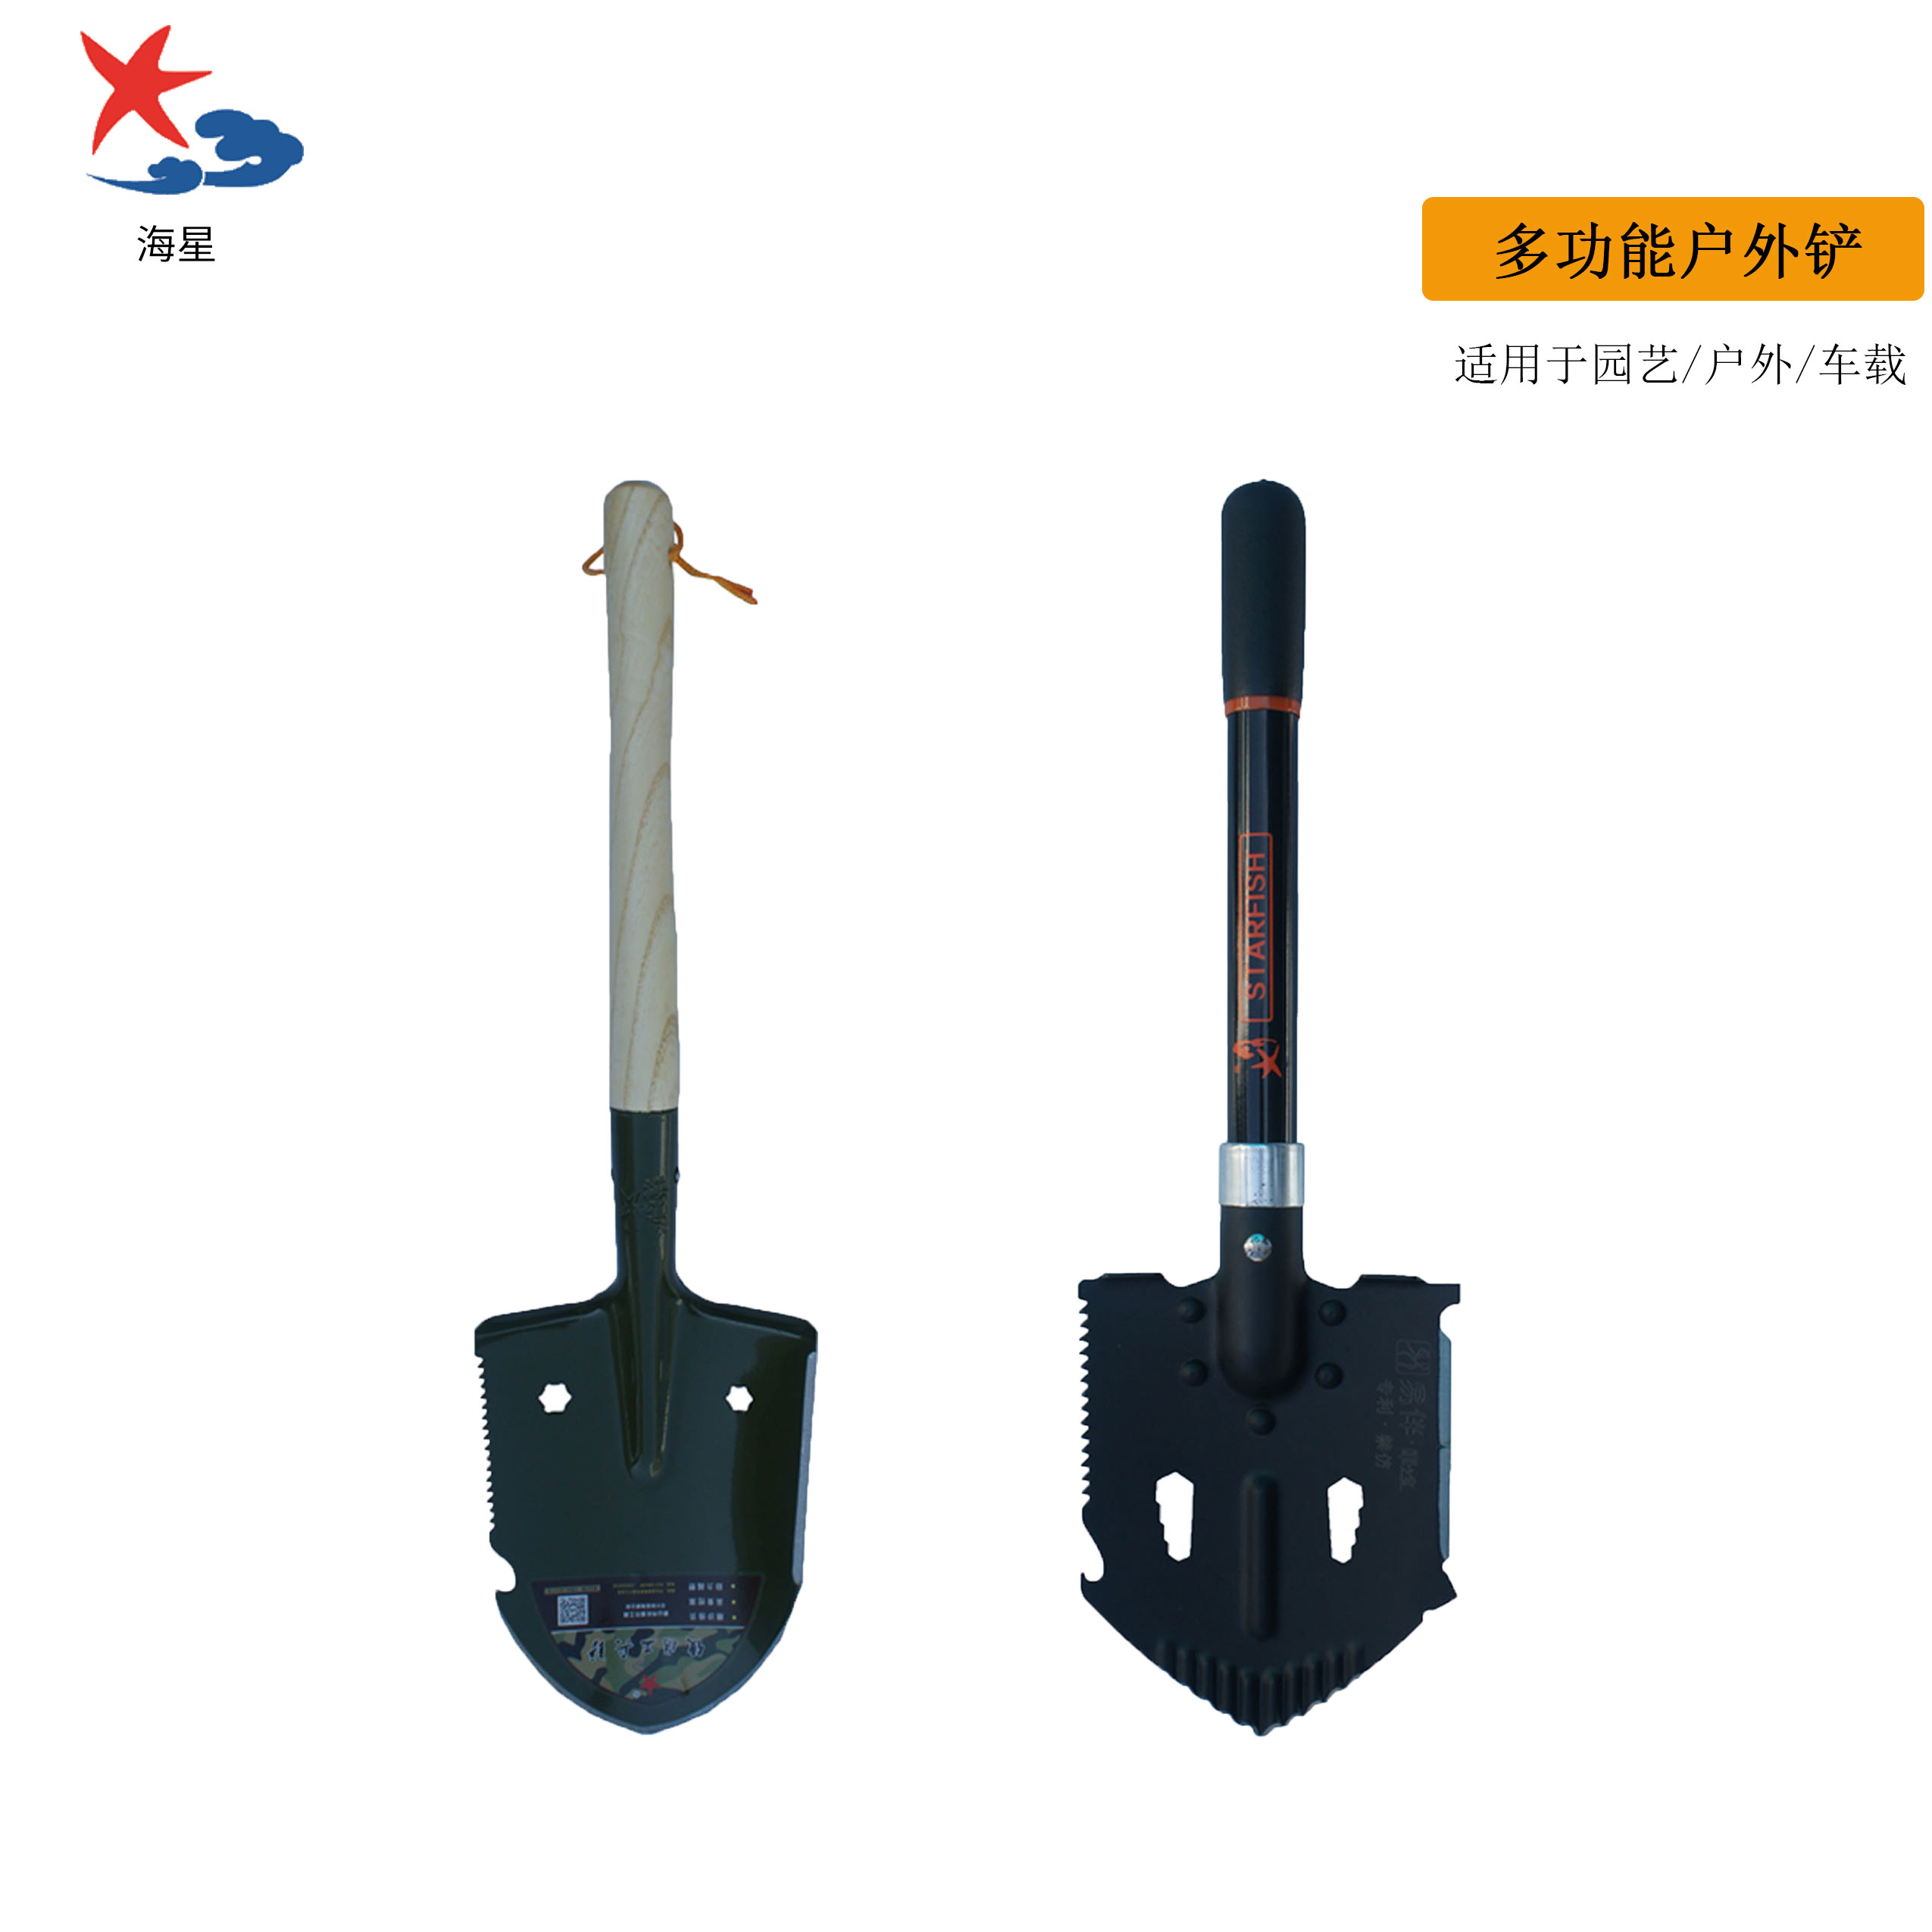 Multi-function shovel